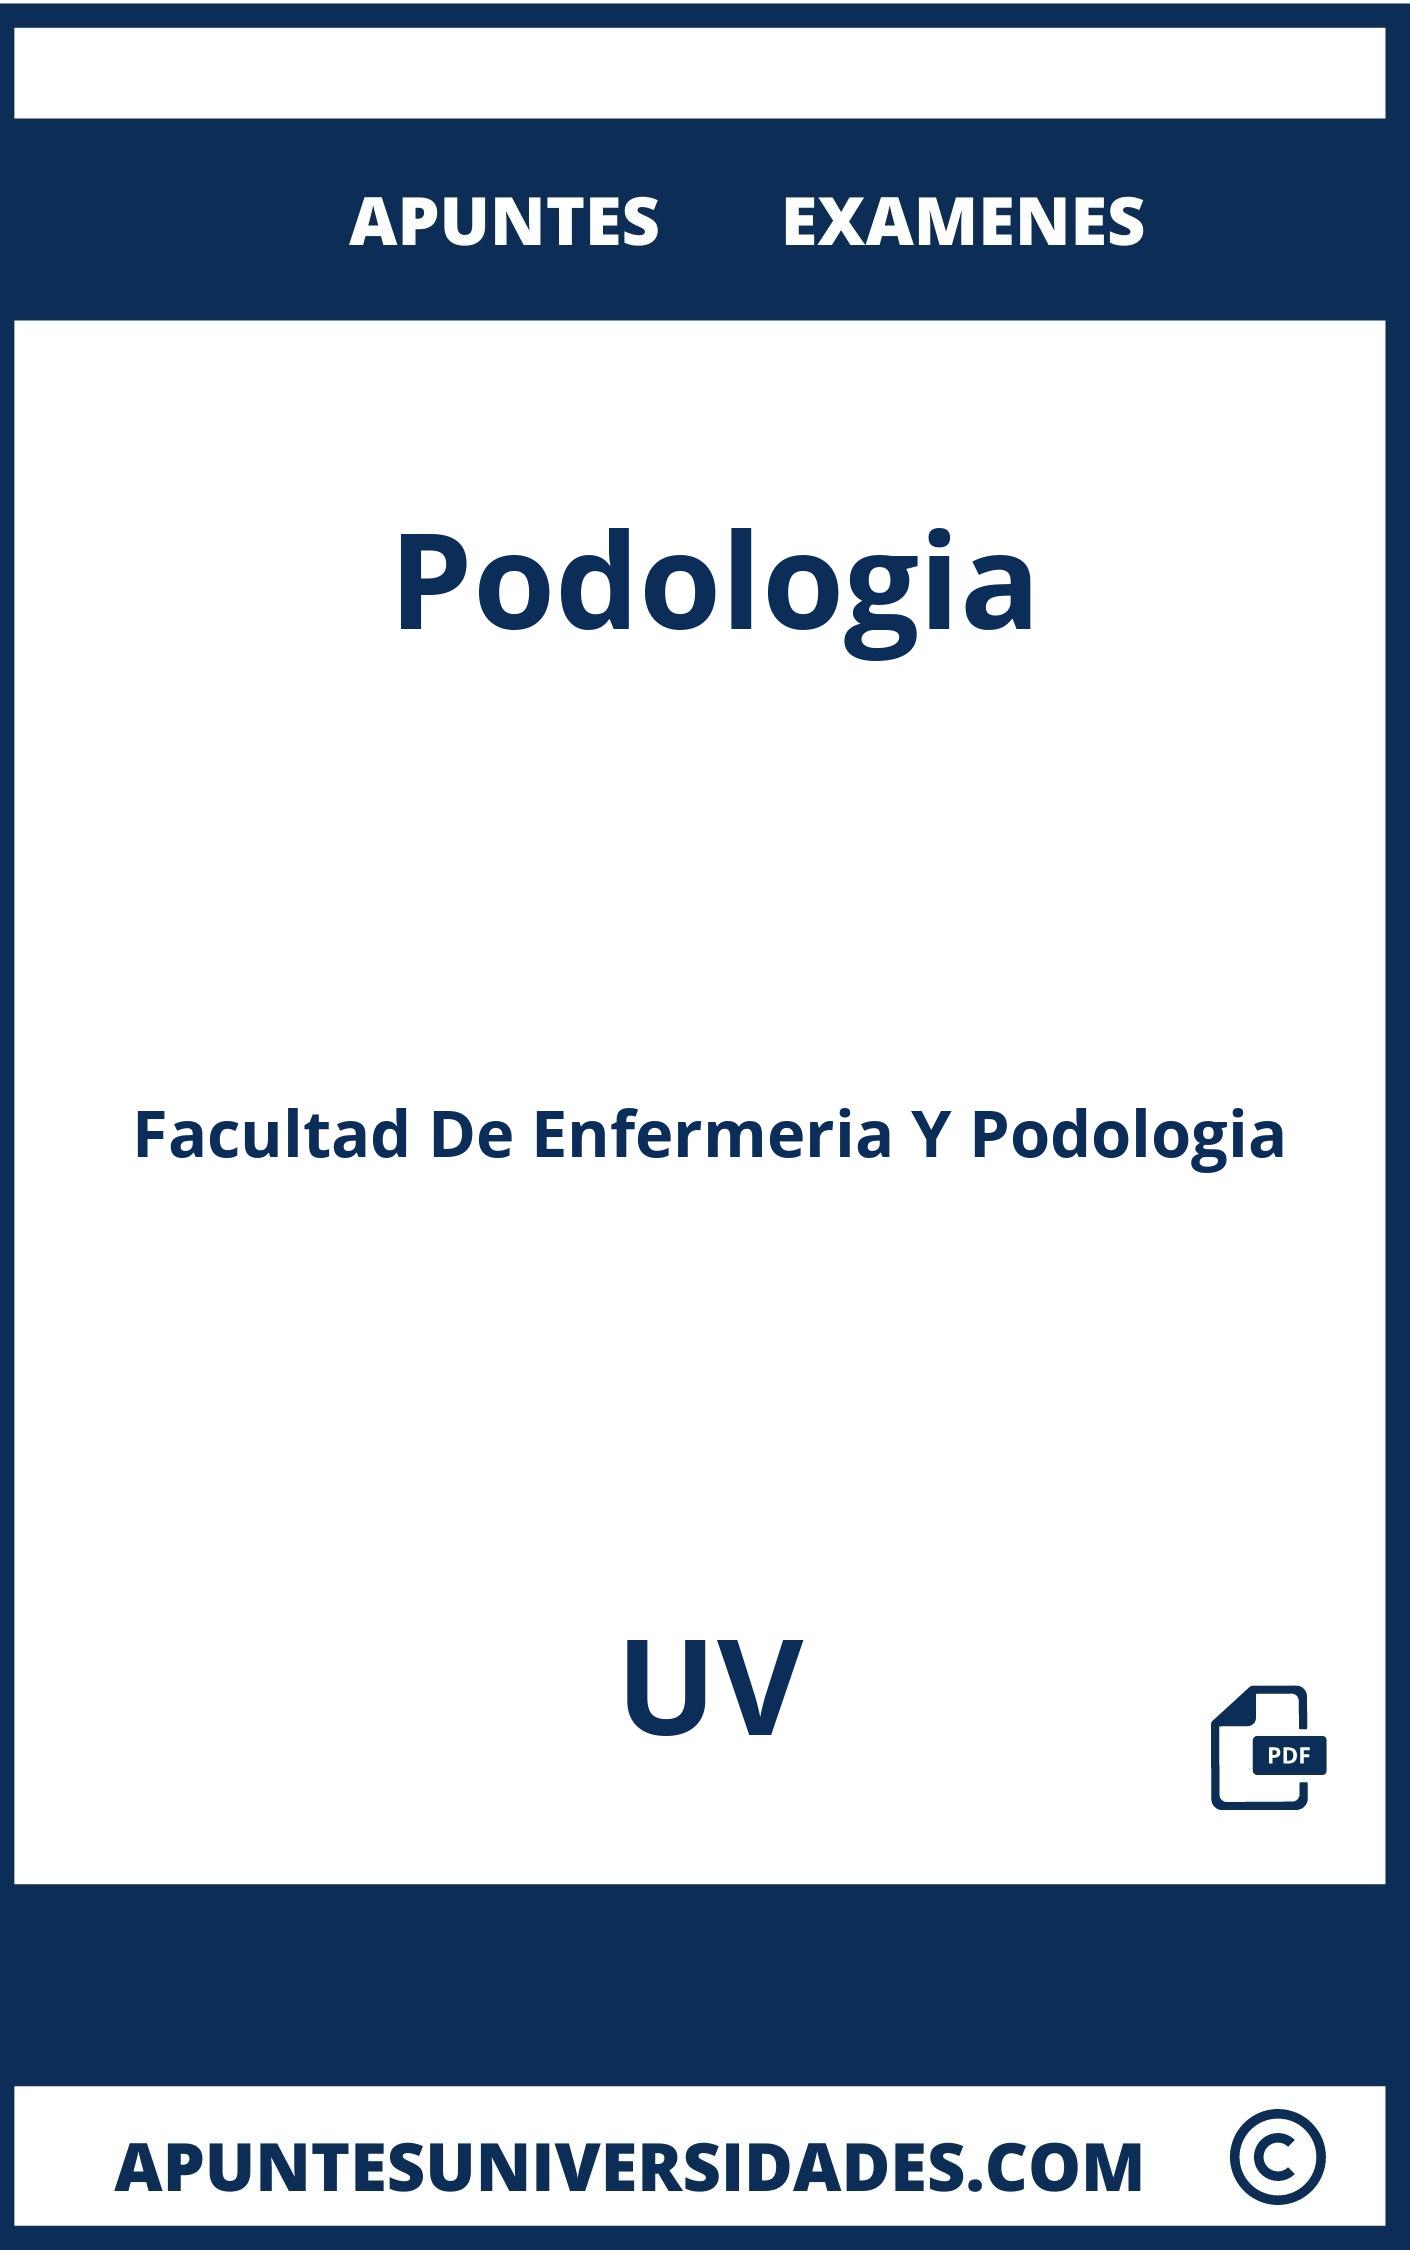 Apuntes y Examenes de Podologia UV